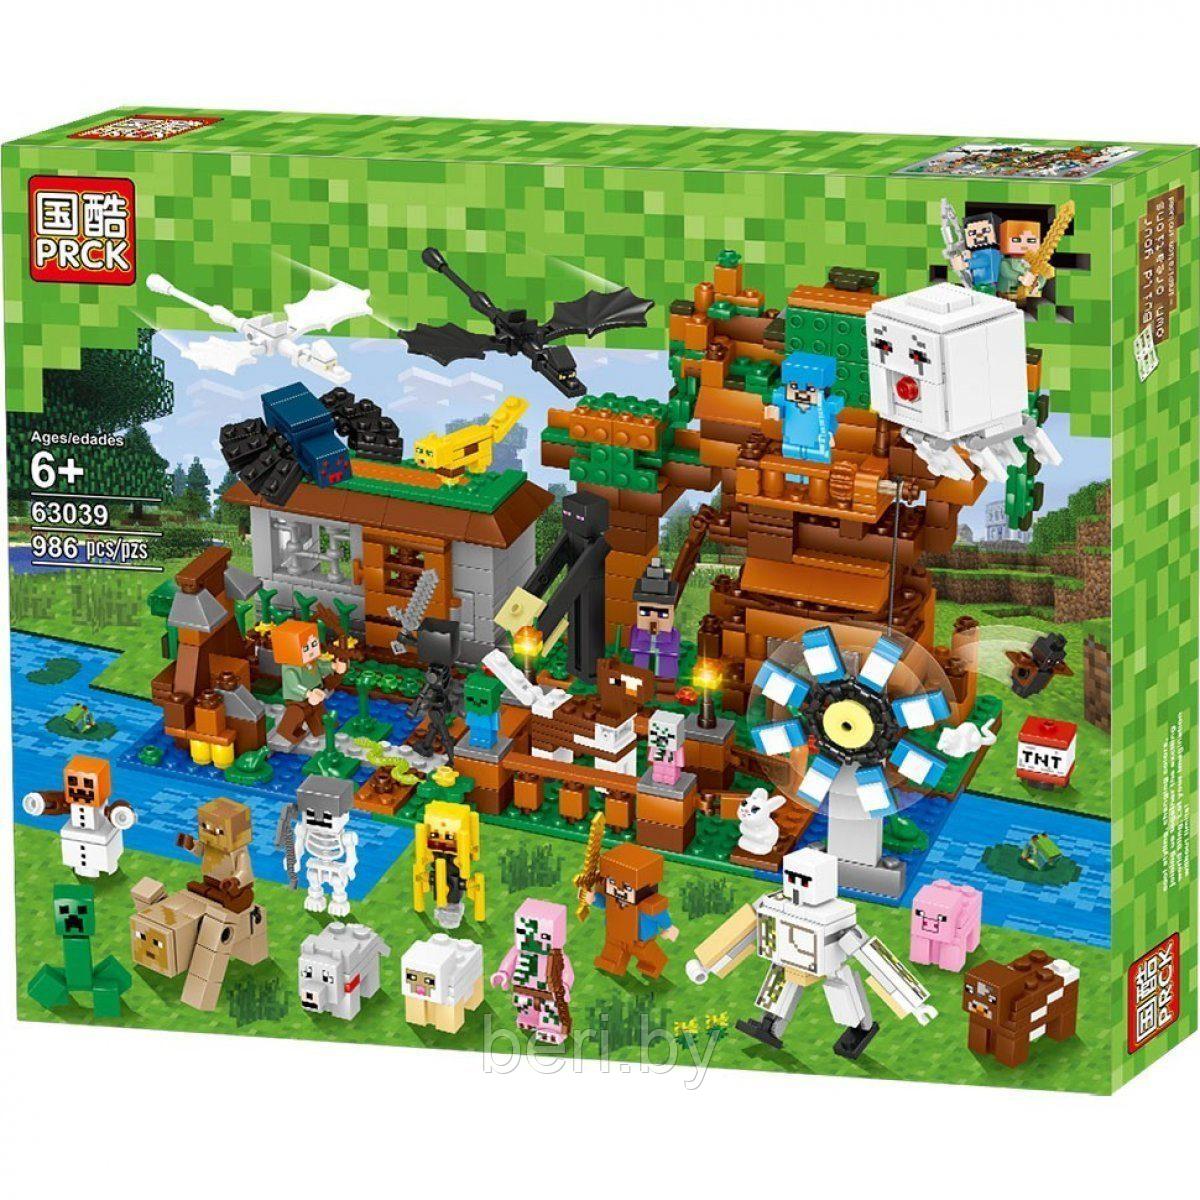 63039 Конструктор PRCK Minecraft "Загородный дом", 986 деталей, Аналог Лего Lego Minecraft